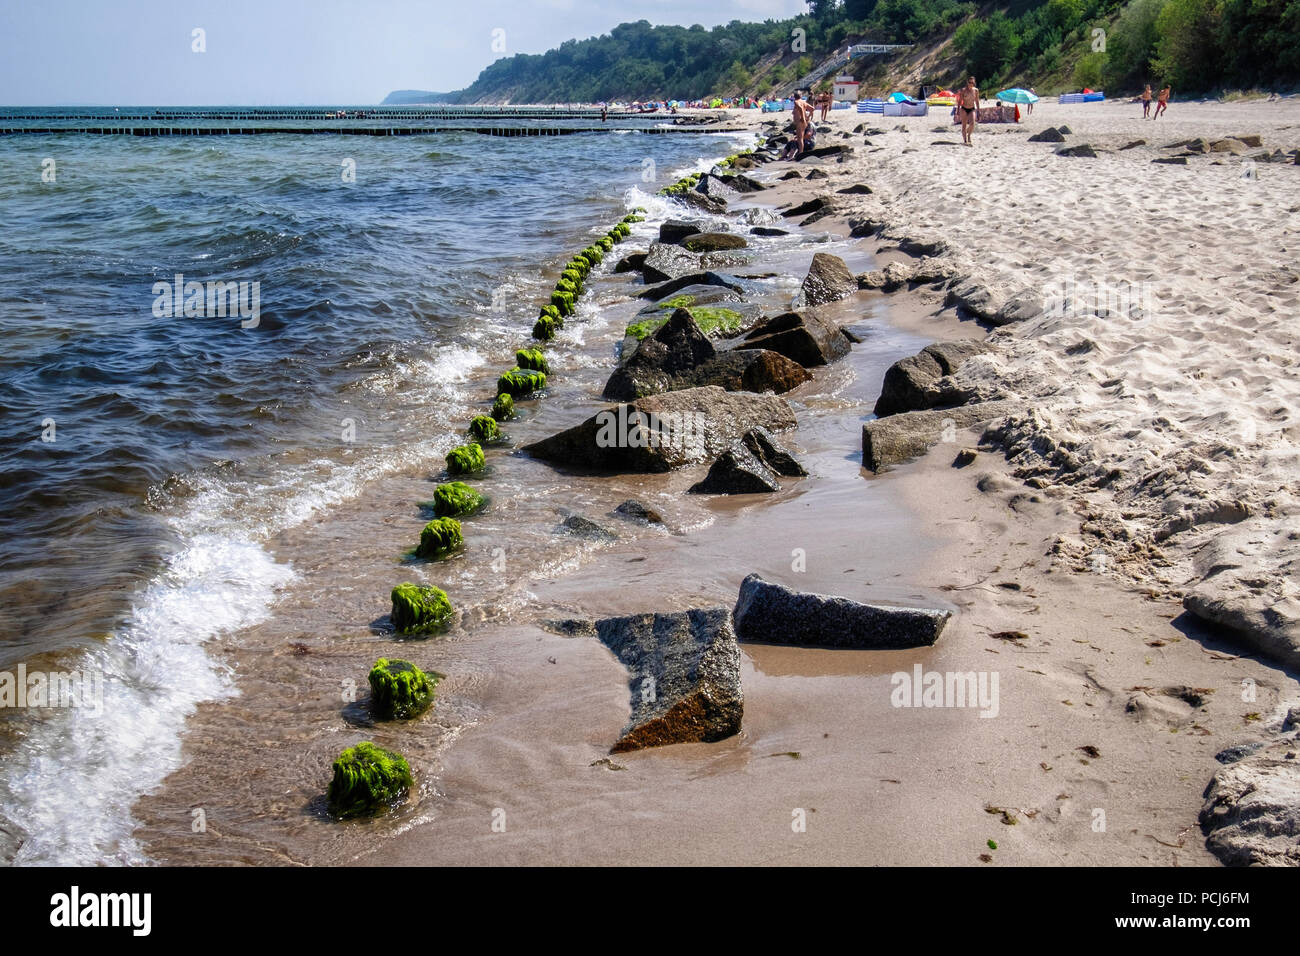 Germania Loddin,Stubbenfelde spiaggia.di balneazione costiere resort sull'isola di Usedom sul Mar Baltico. Rocks & legno groyne prevenire erosione della spiaggia sabbiosa Foto Stock